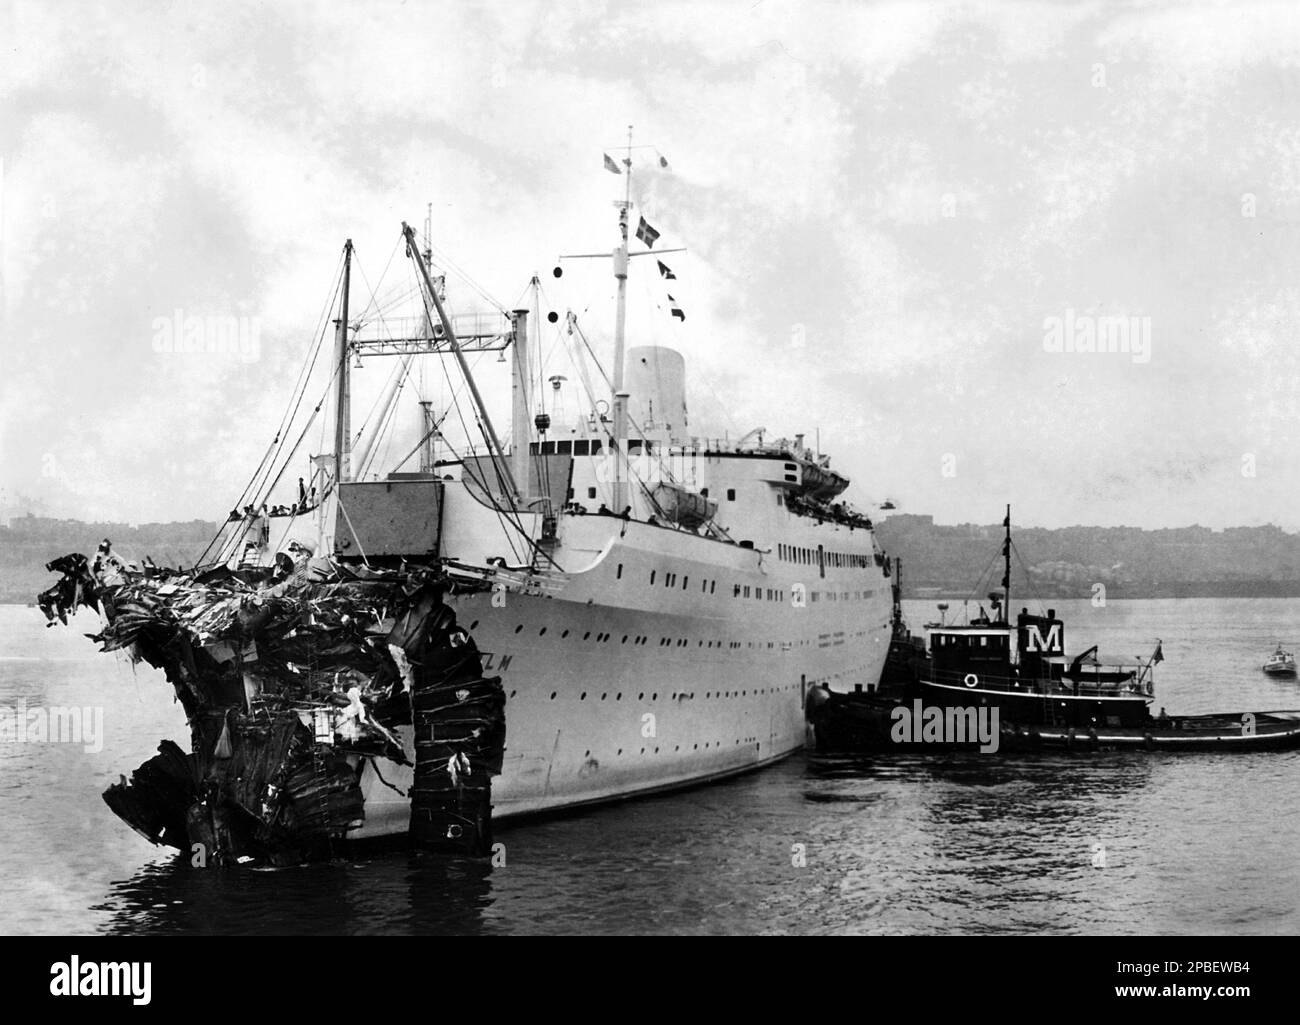 1956 : la SS holm , dopo lo schianto con la SS Andrea Doria . L'Andrea Doria era un transatlantico per la linea italiana (Società di navigazione Italia), portabile a Genova. Prende il nome dall'ammiraglio genovese Andrea Doria del 16th° secolo. Lanciata il 16 giugno 1951, la nave ha intrapreso il suo primo viaggio il 14 gennaio 1953 . Il 25 luglio 1956, mentre navigava al largo della costa di Nantucket, Massachusetts, diretta a New York City, l'Andrea Doria si scontrò con la SS holm della linea Svedese-americana, diretta verso est, in quella che sarebbe diventata una delle più famose catastrofi marittime della storia. Colpito Foto Stock